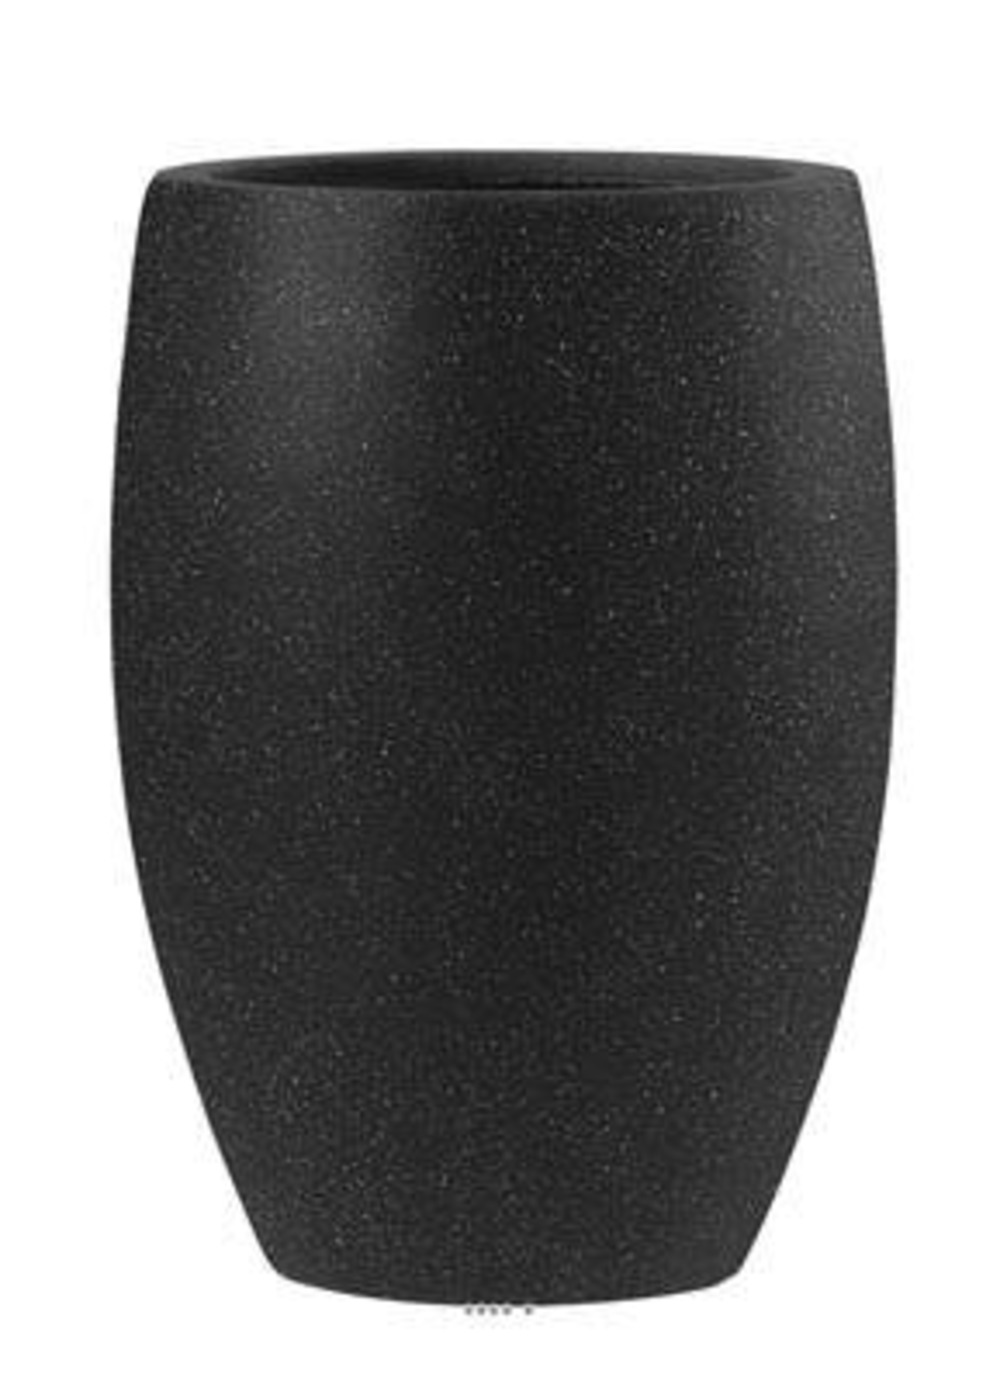 Bac fibres de verre/ composite teras extérieur bullet d47 xh67cm noir - choisiss